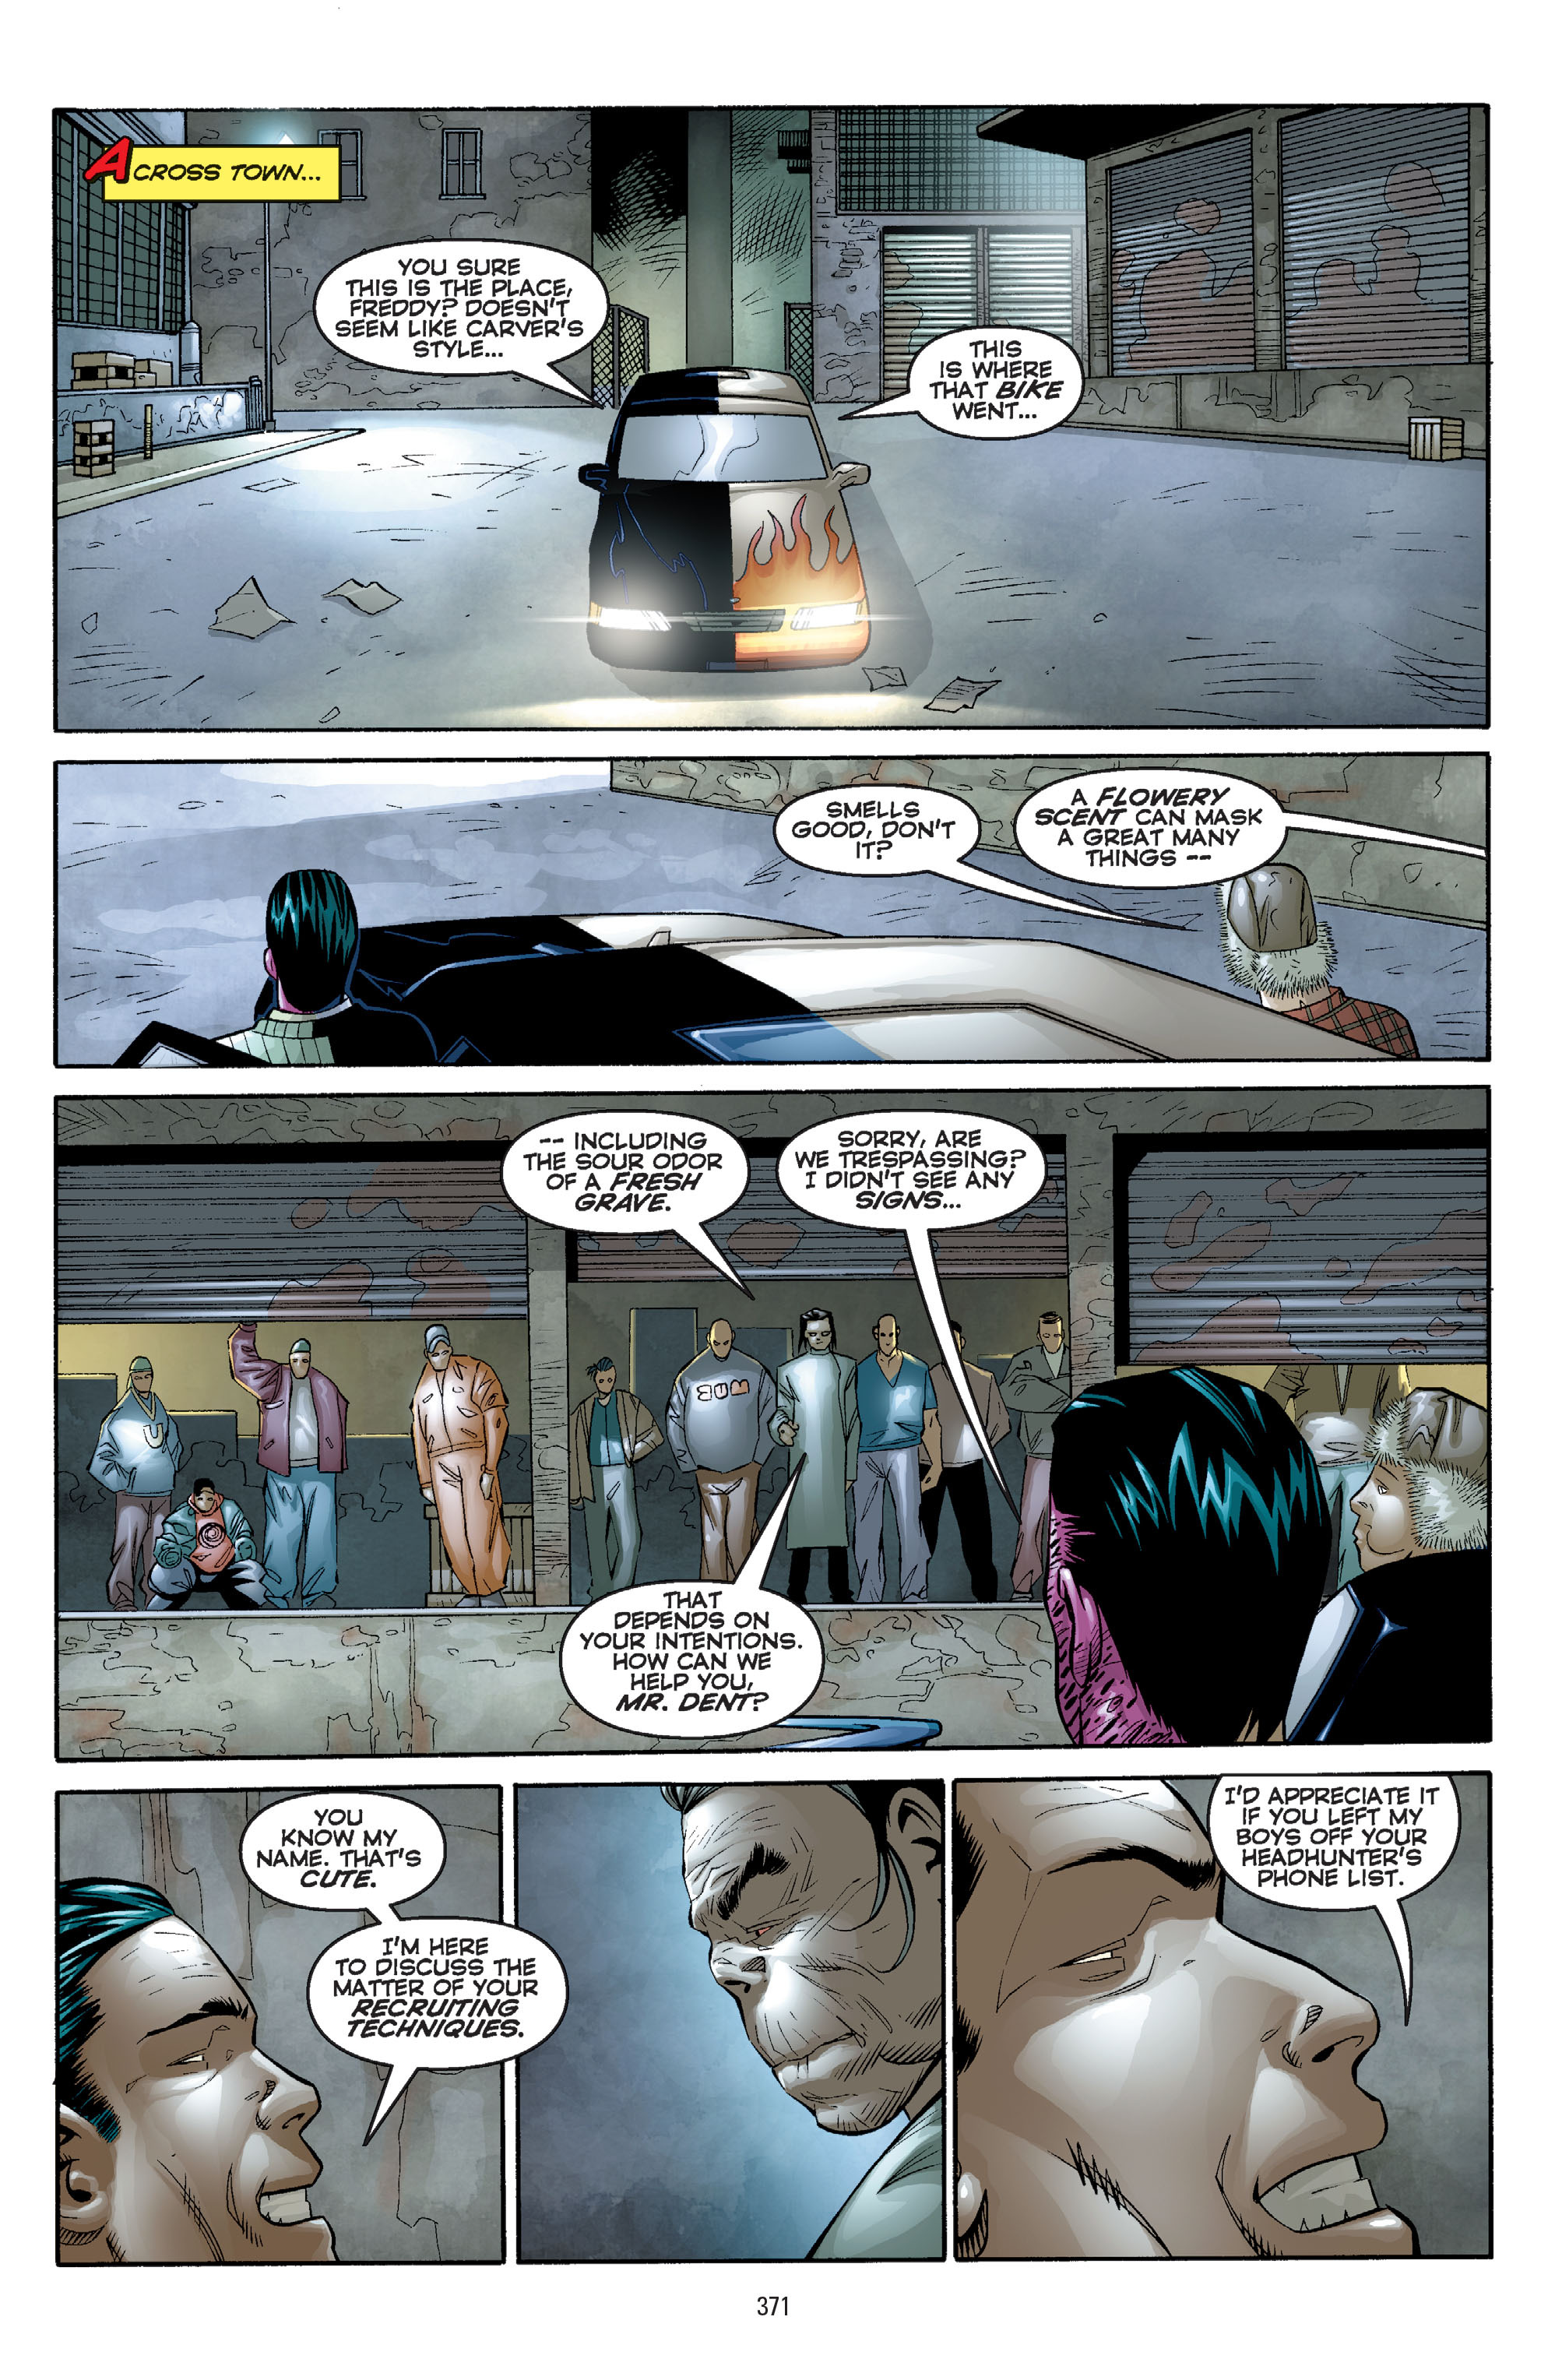 DC Comics/Dark Horse Comics: Justice League Full #1 - English 361